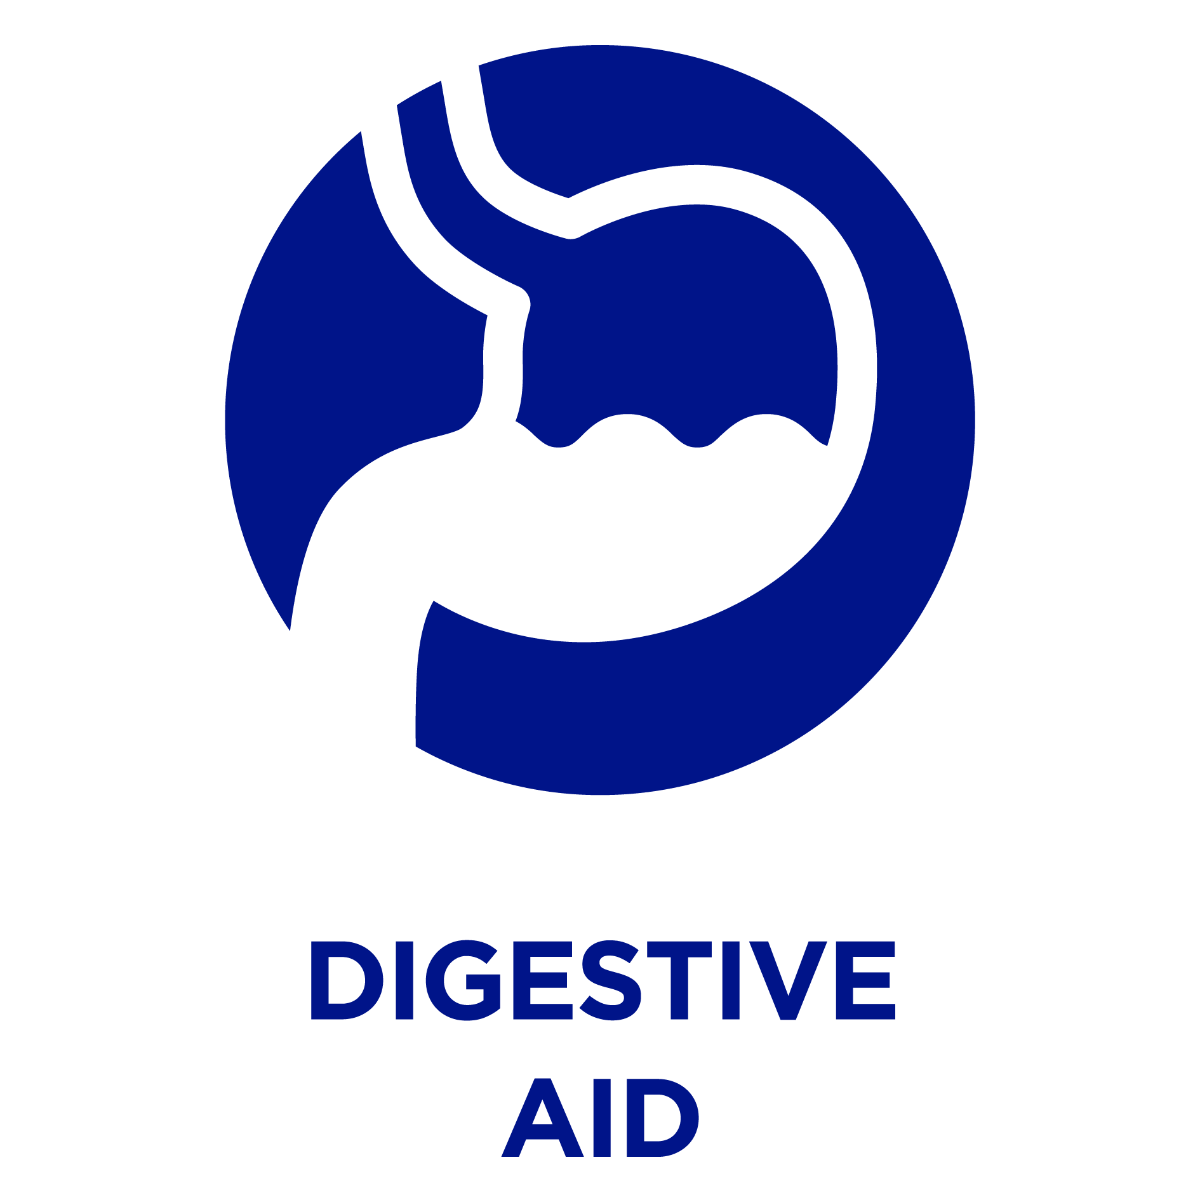 Digestive Aid